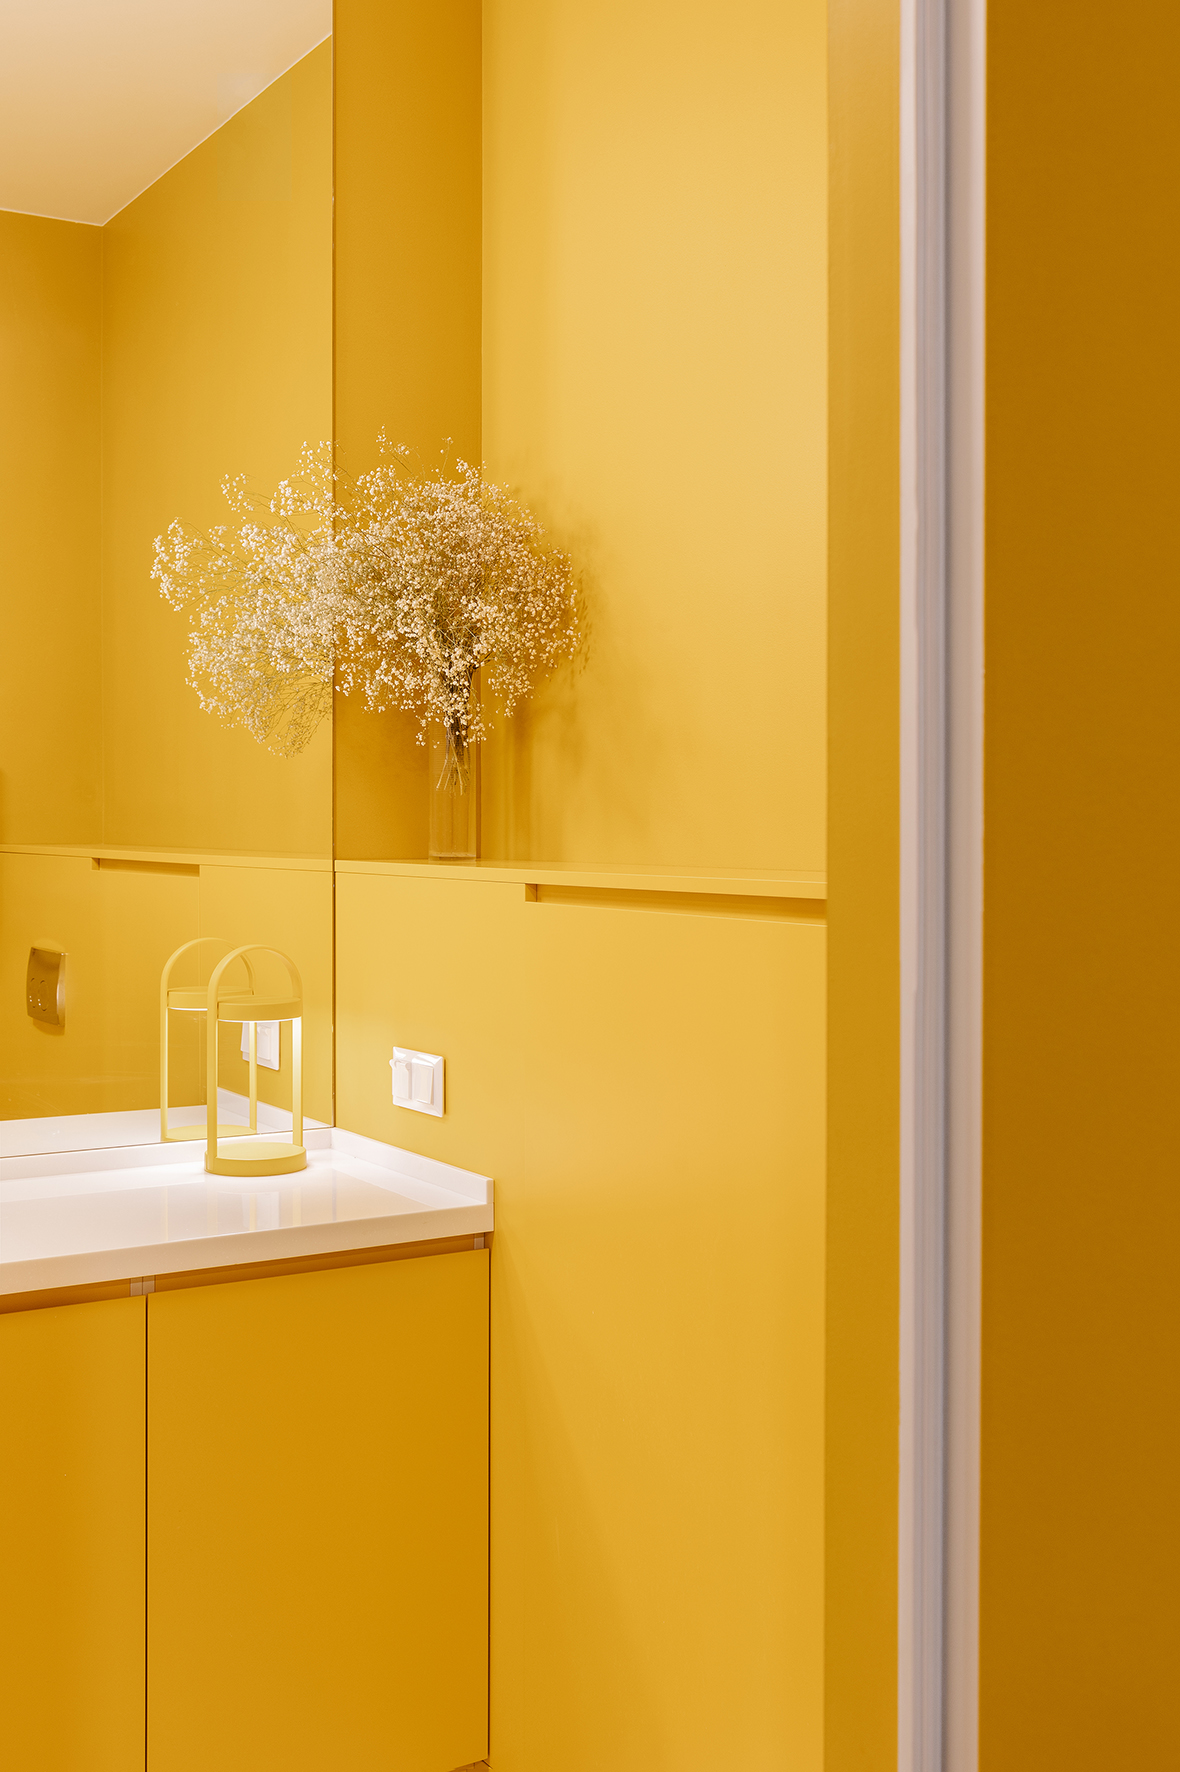 Nhiều người e ngại màu vàng làm tone chủ đạo vì sợ nó quá 'chói' nên chỉ dùng như điểm nhấn. Mặc dù vậy, không thể phủ nhận phòng tắm nhỏ này khiến chúng ta cảm thấy vô cùng ấm áp khi nhìn ngắm, nó quyến rũ nhờ sắc vàng pha cam, khác hẳn với màu vàng tươi quen thuộc.